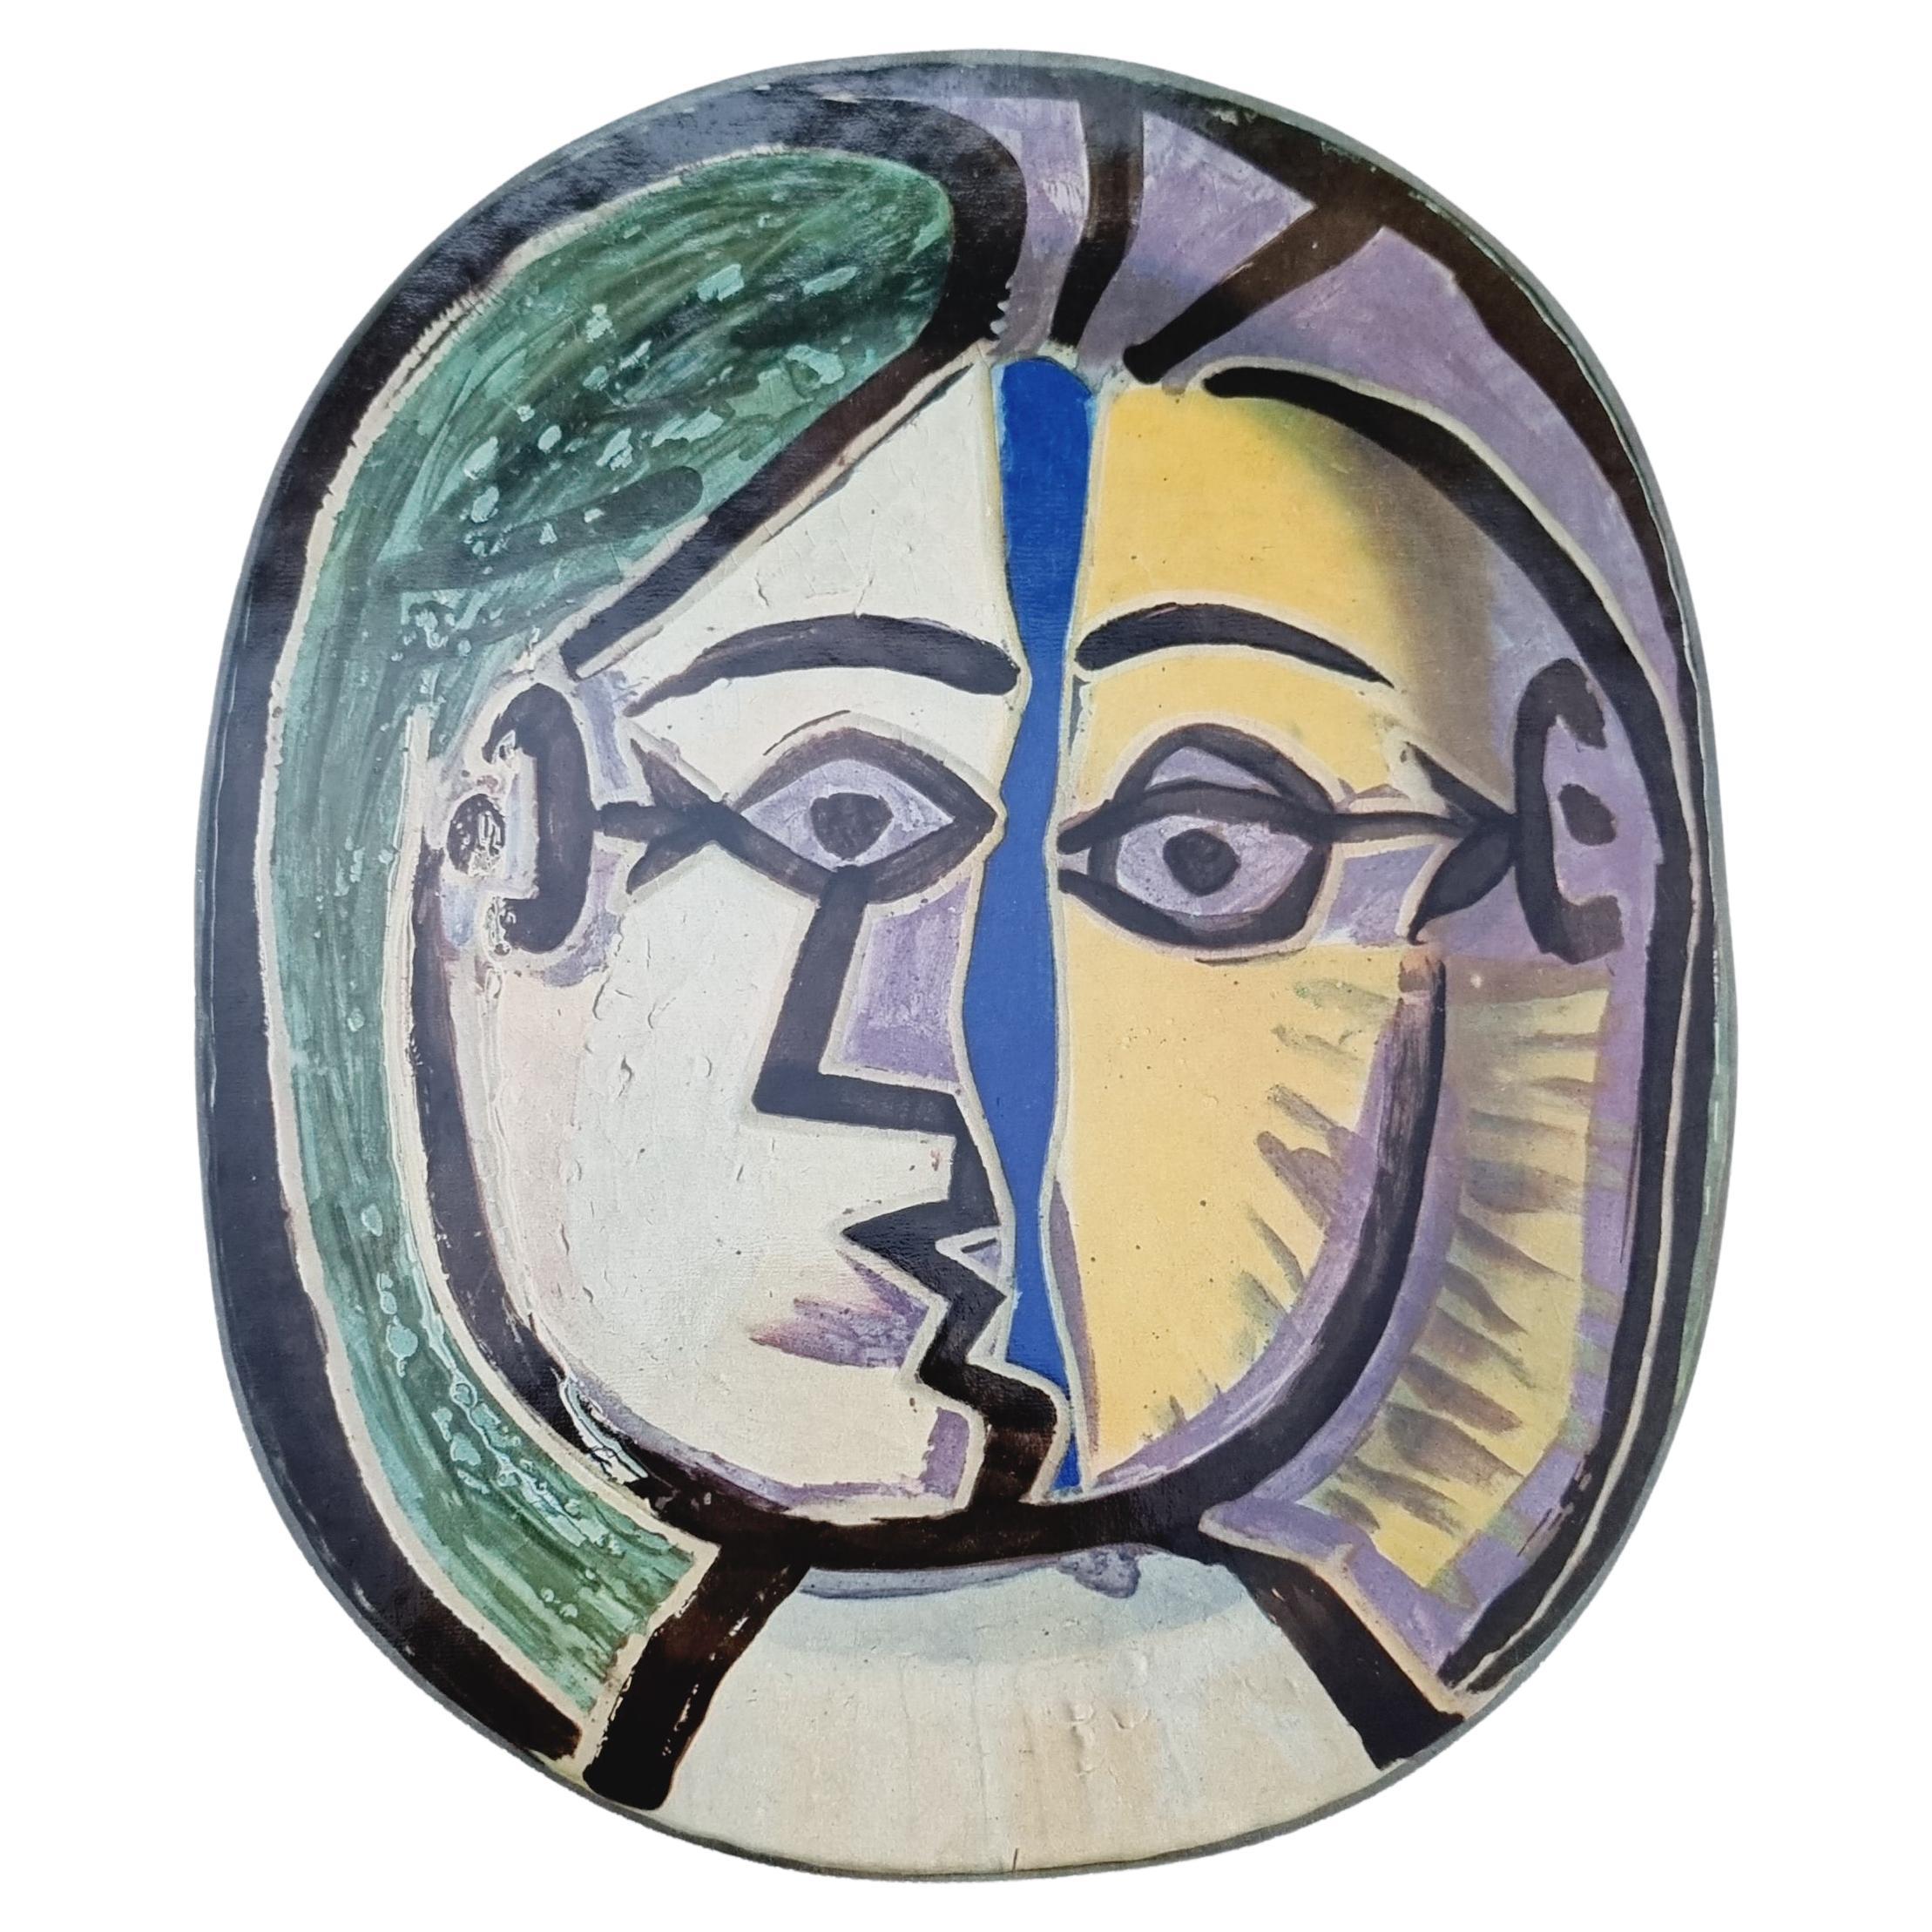 Albert Skira, Print of Face Ceramic Plate from "Céramiques De Picasso" Art Folio